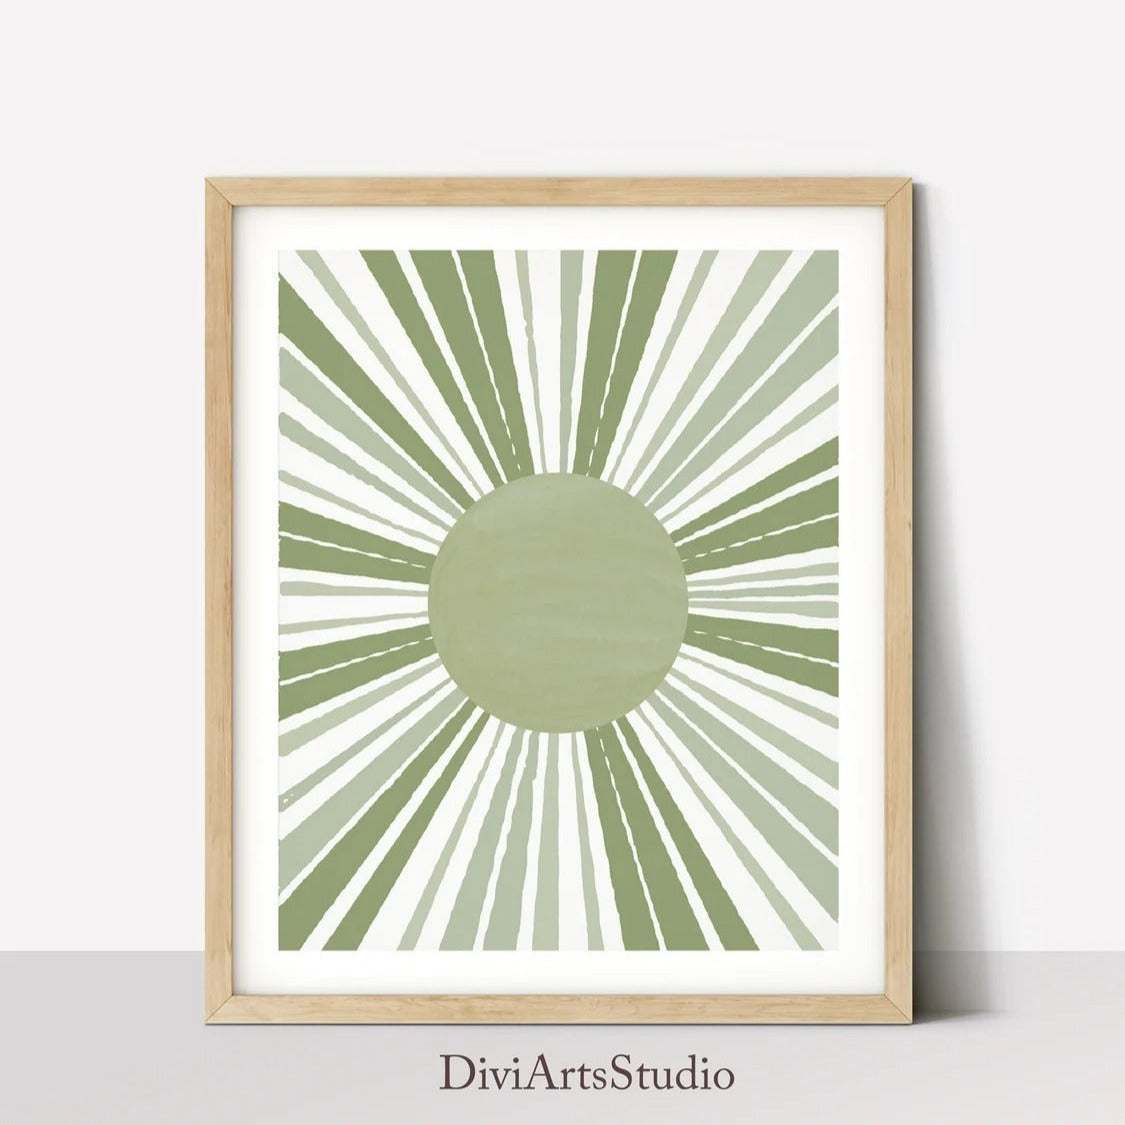 Sunburst print, Sun Wall Art, Sage Green Art Print, Mid Century Modern Sun Decor, Abstract Geometric Sun Rays Poster, Minimalist Sun